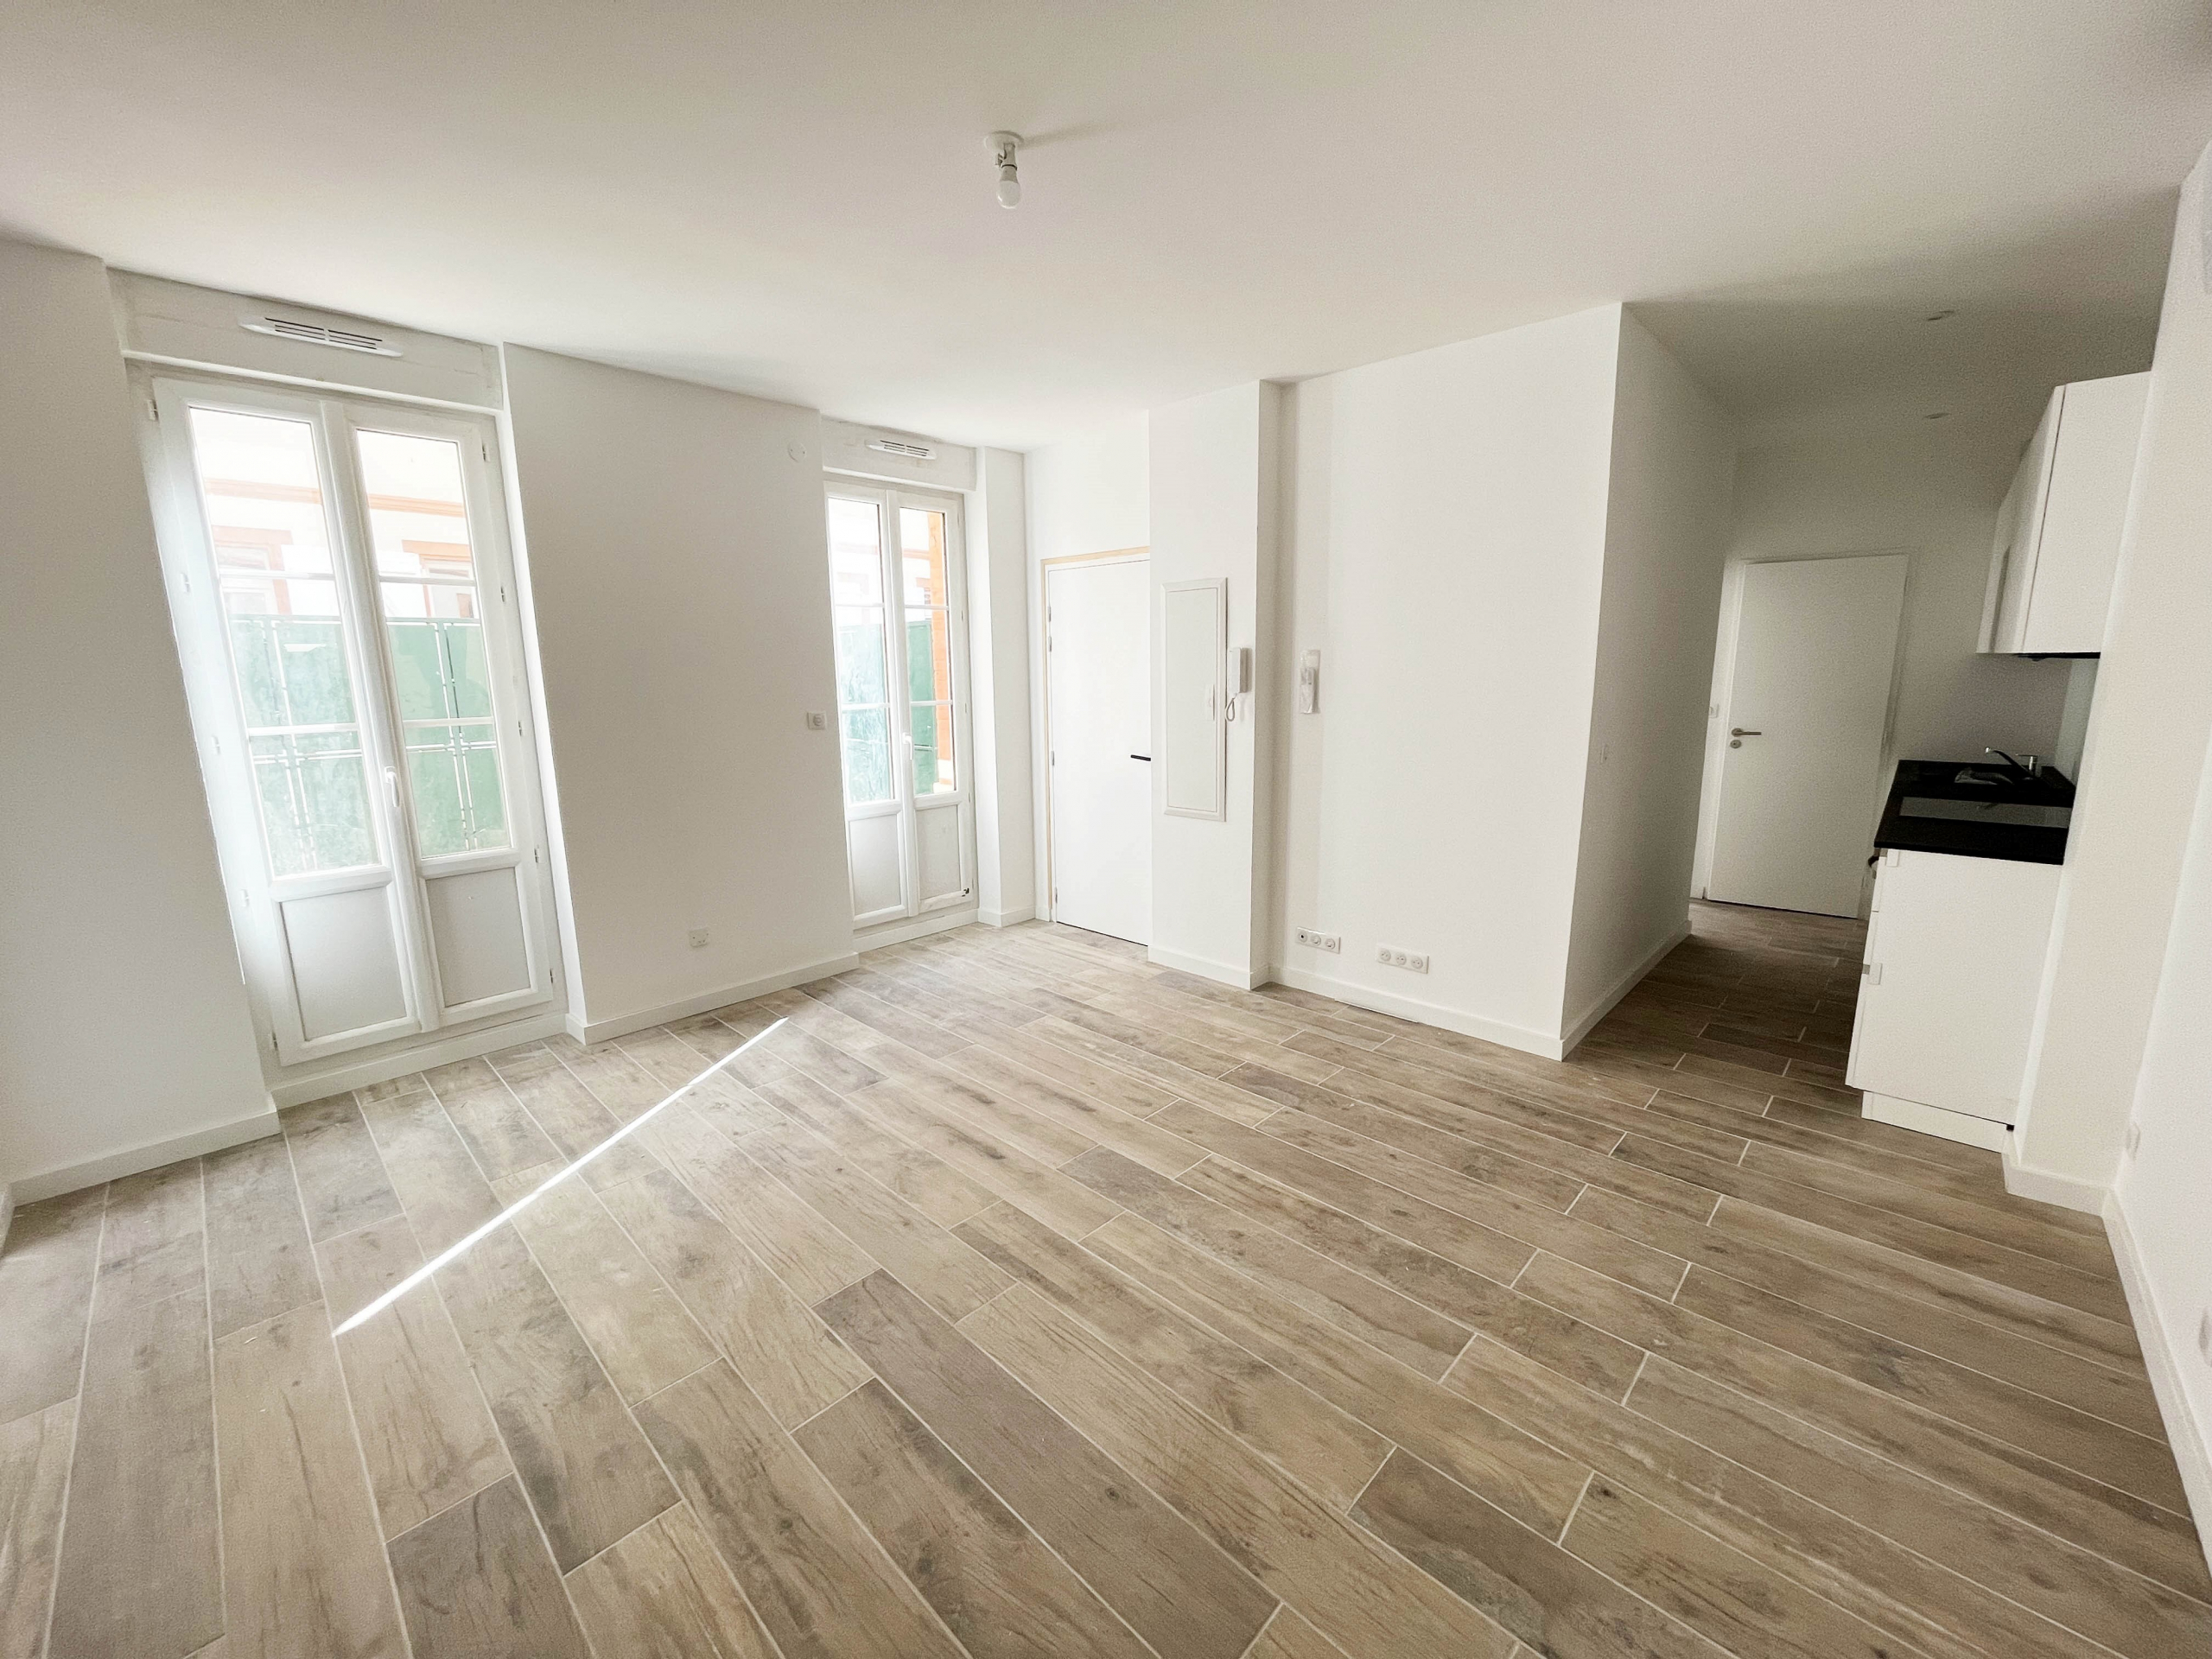 Rénovation complète d'un ensemble immobilier pour la création de 12 logements. Rue Colonne - Toulouse.